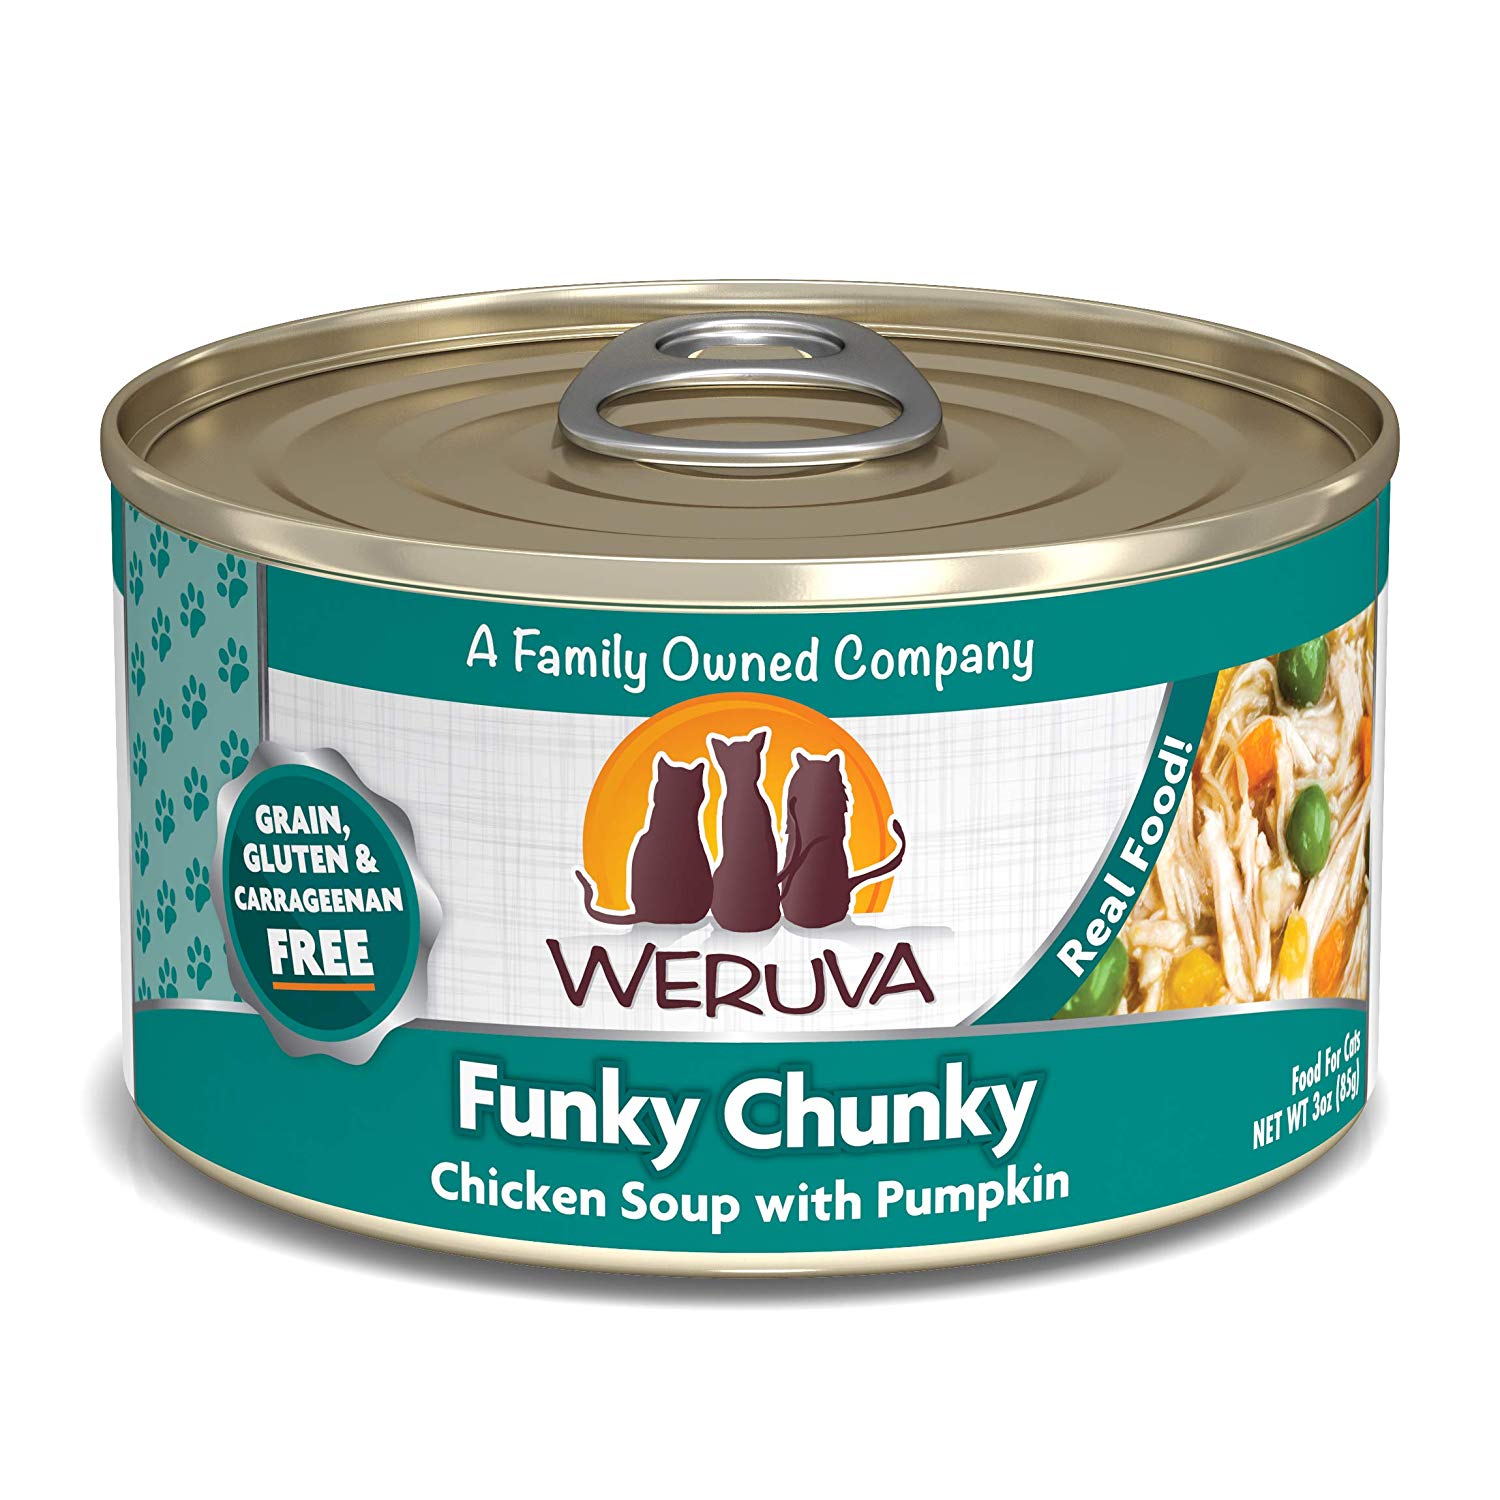 唯美味主食貓罐-田園雞肉煲
WERUVA-Funky Chunky Chicken Soup Chicken Soup With Pumpkin